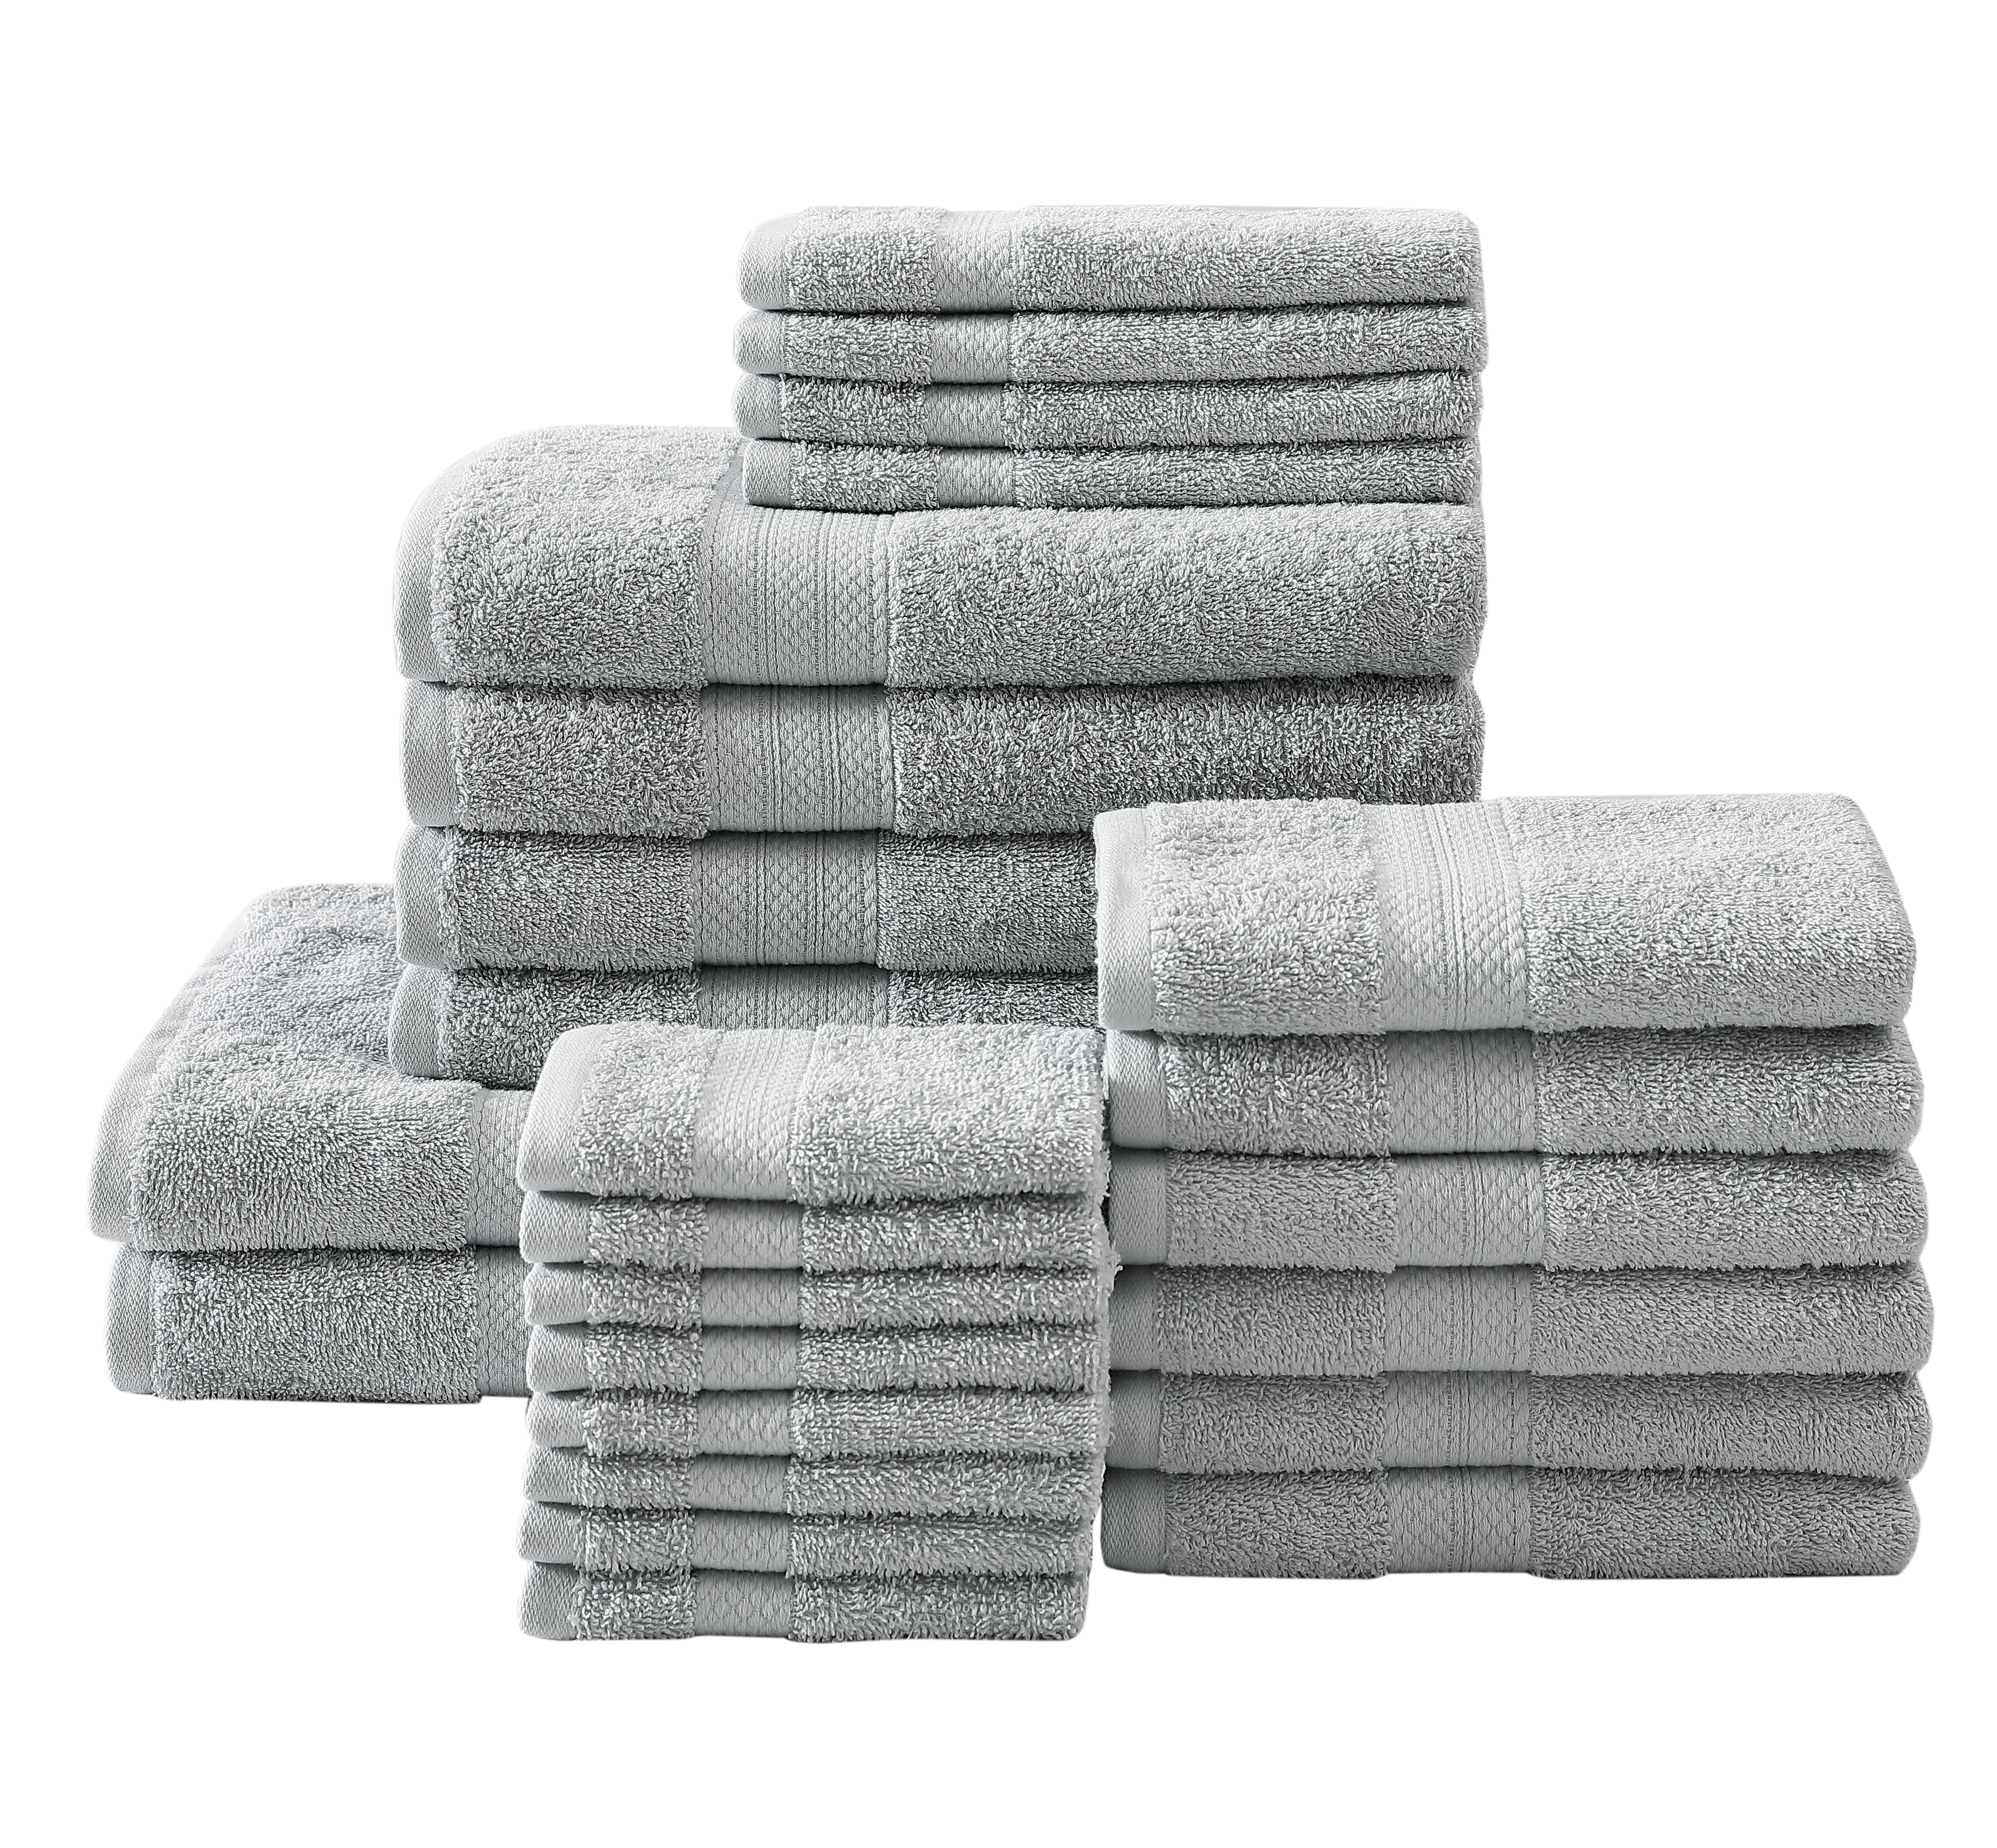 Royal Heritage Home Low Twist 24 Piece 100 Cotton Bath Towel Set Reviews Wayfair